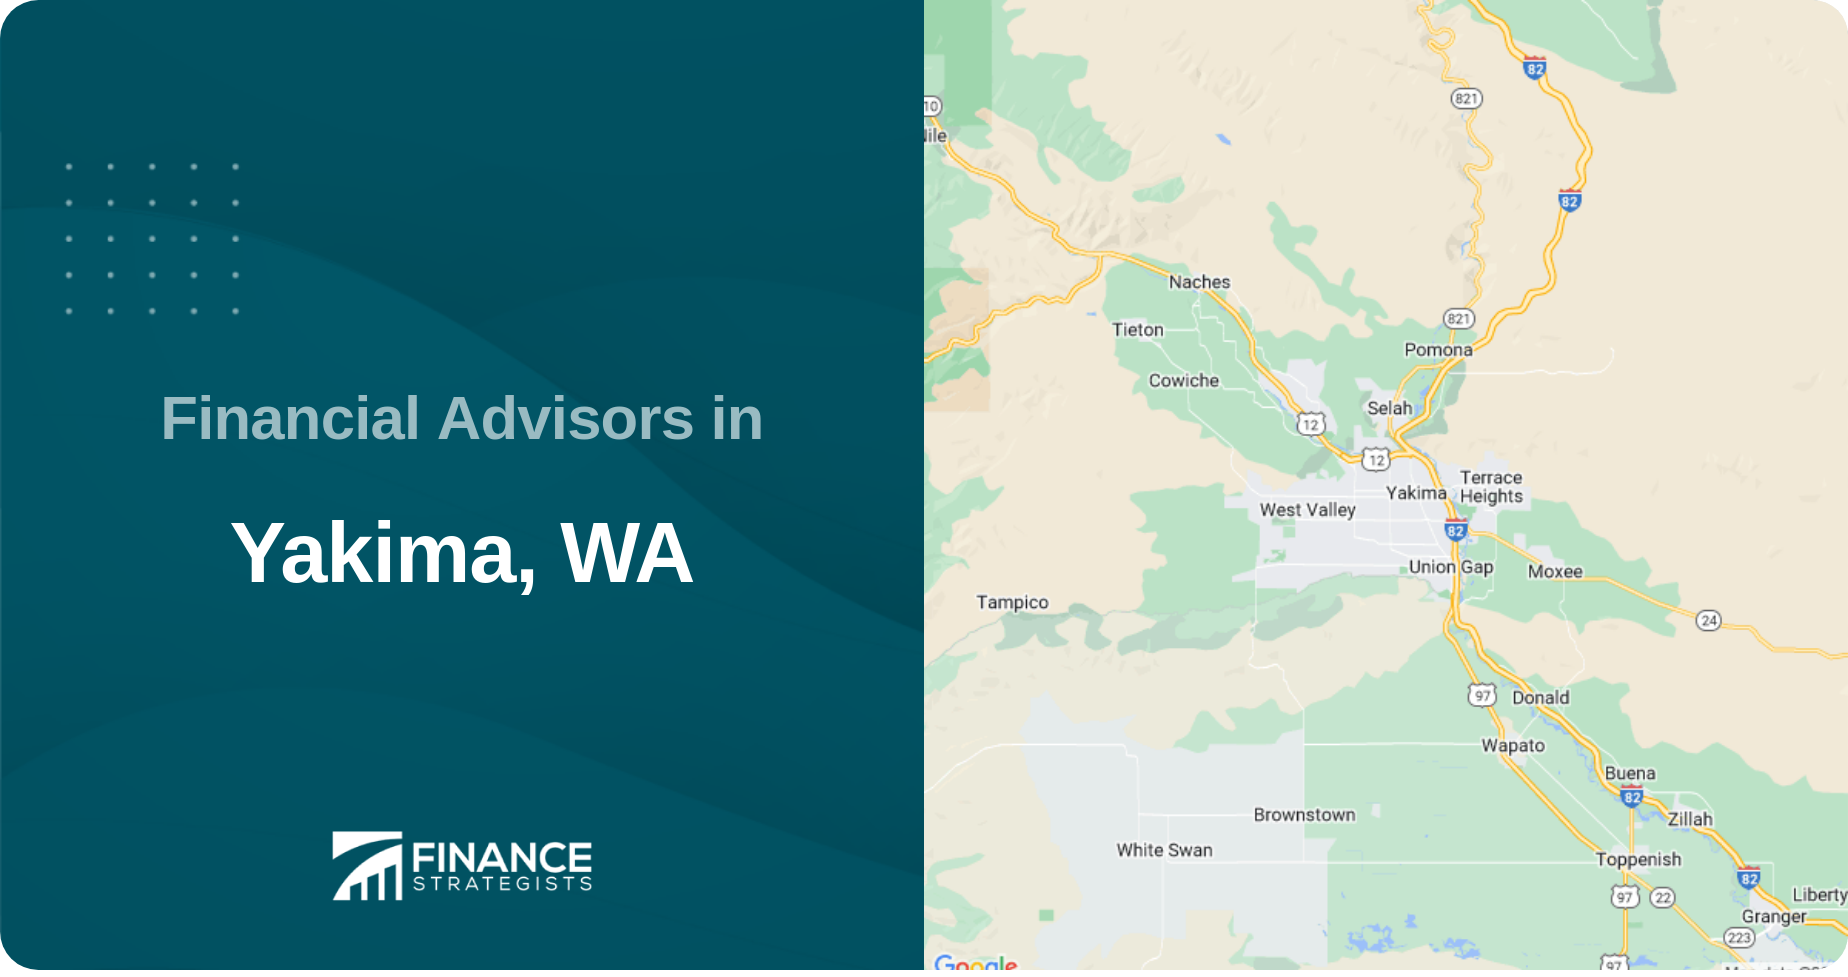 Financial Advisors in Yakima, WA